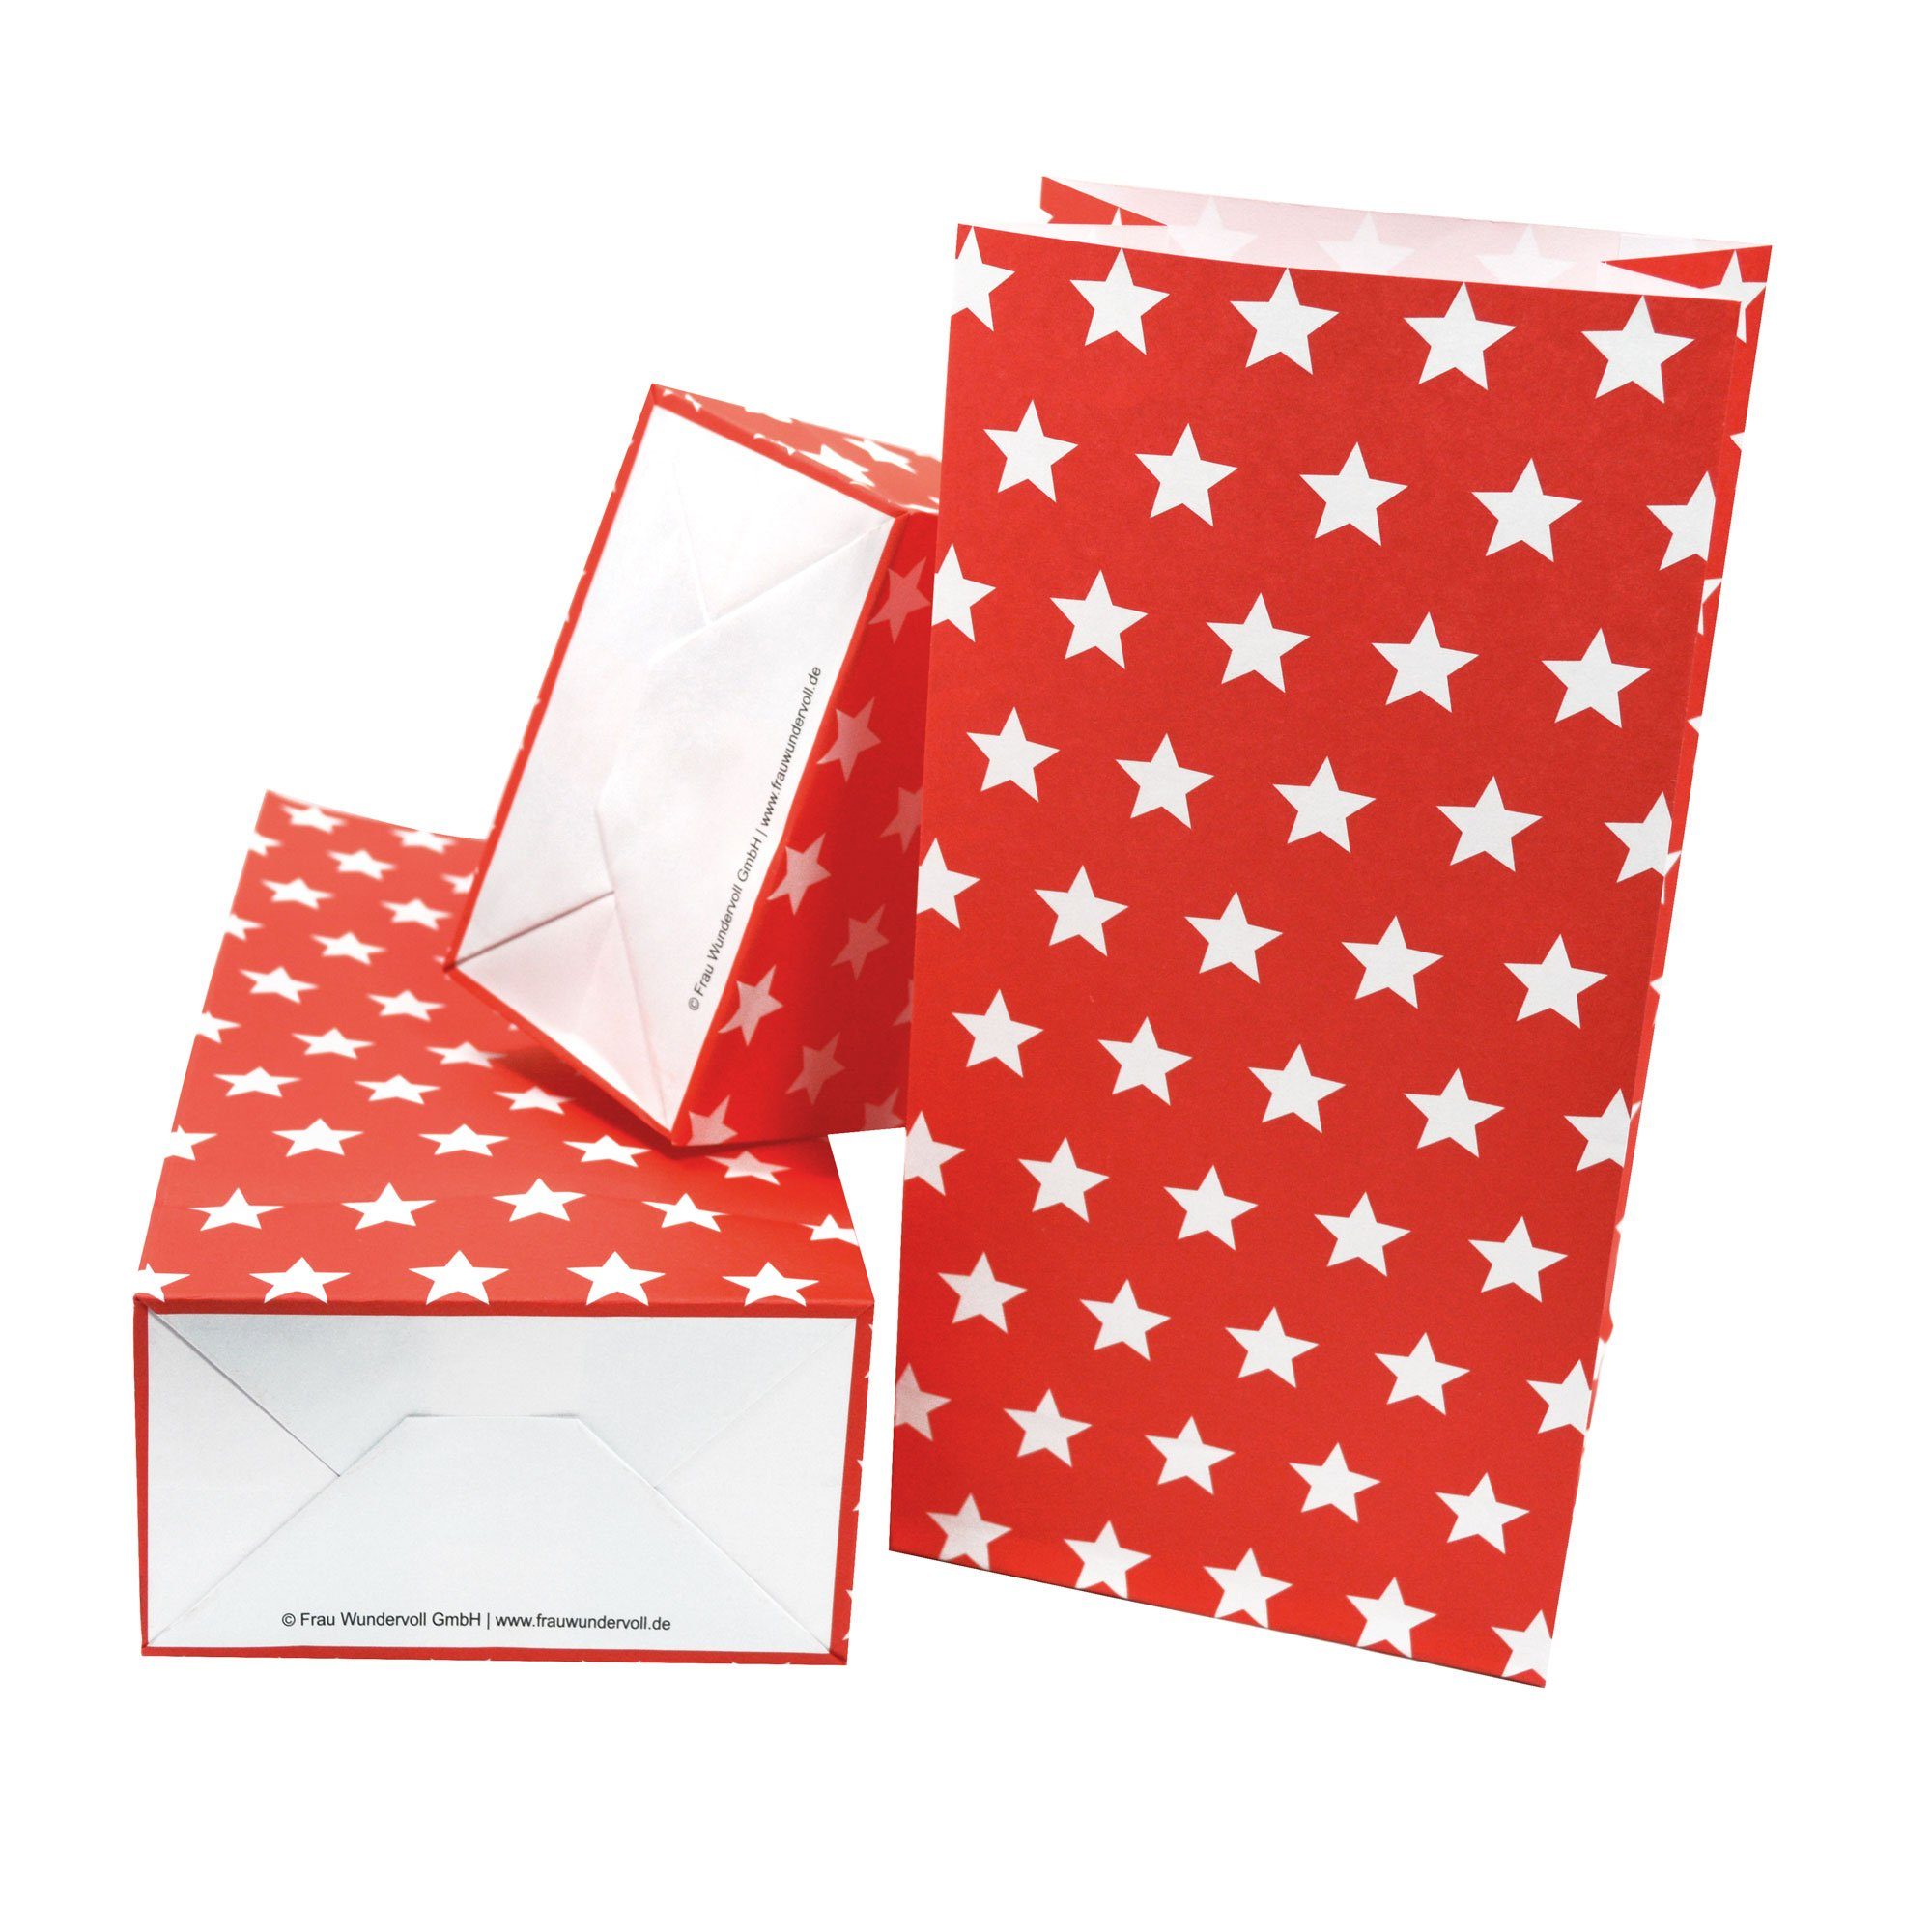 Frau WUNDERVoll Papierdekoration Papiertüten mit Boden, rot, weiße Sterne, 100g